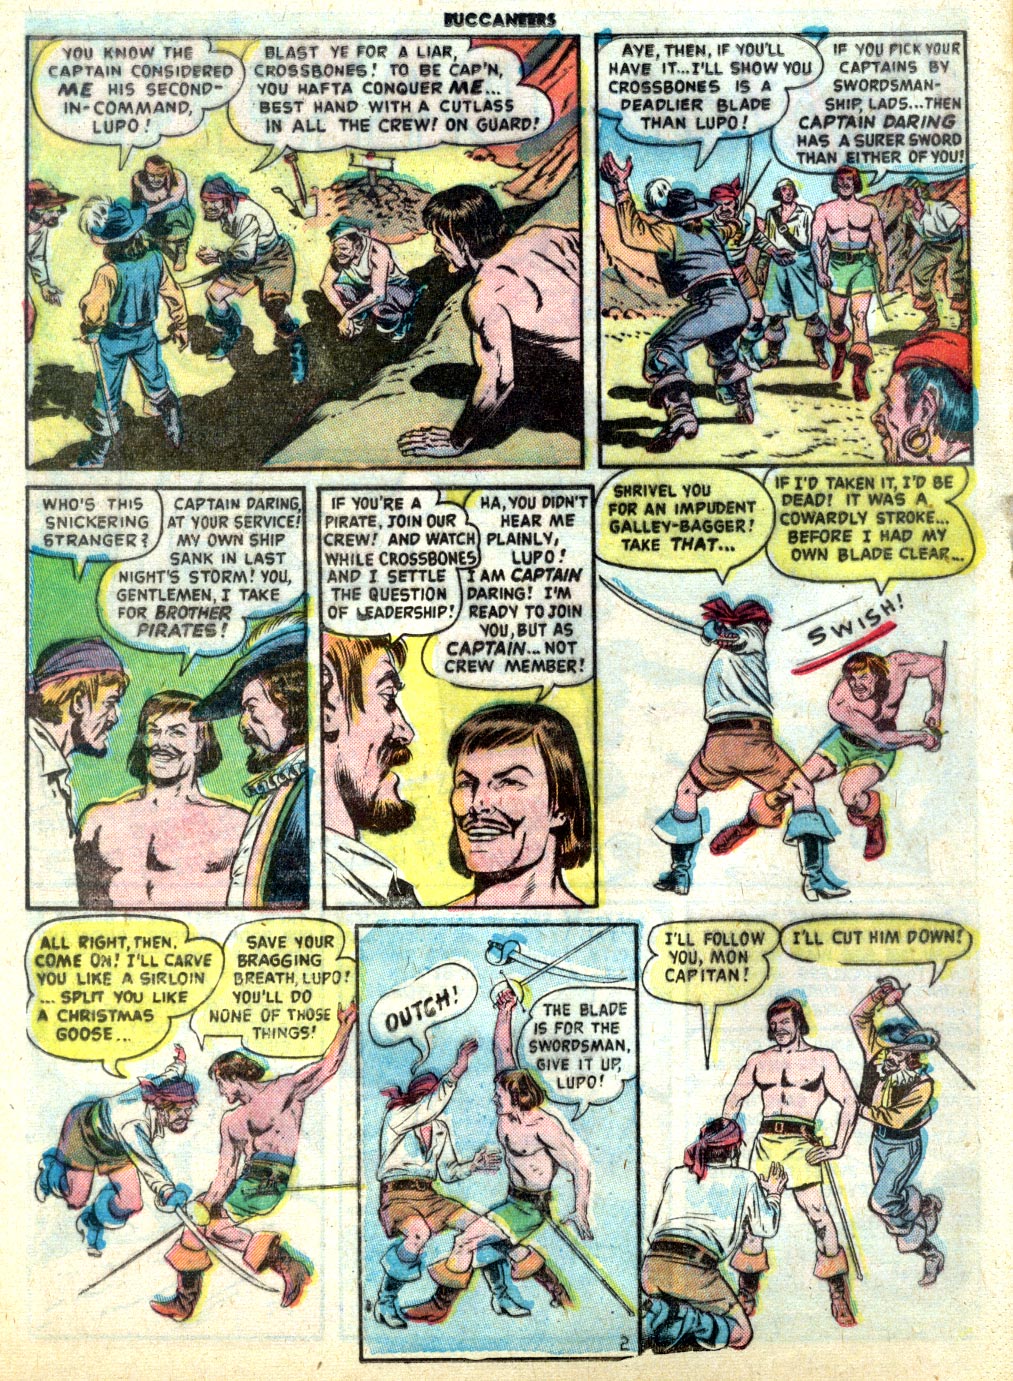 Read online Buccaneers comic -  Issue #19 - 4